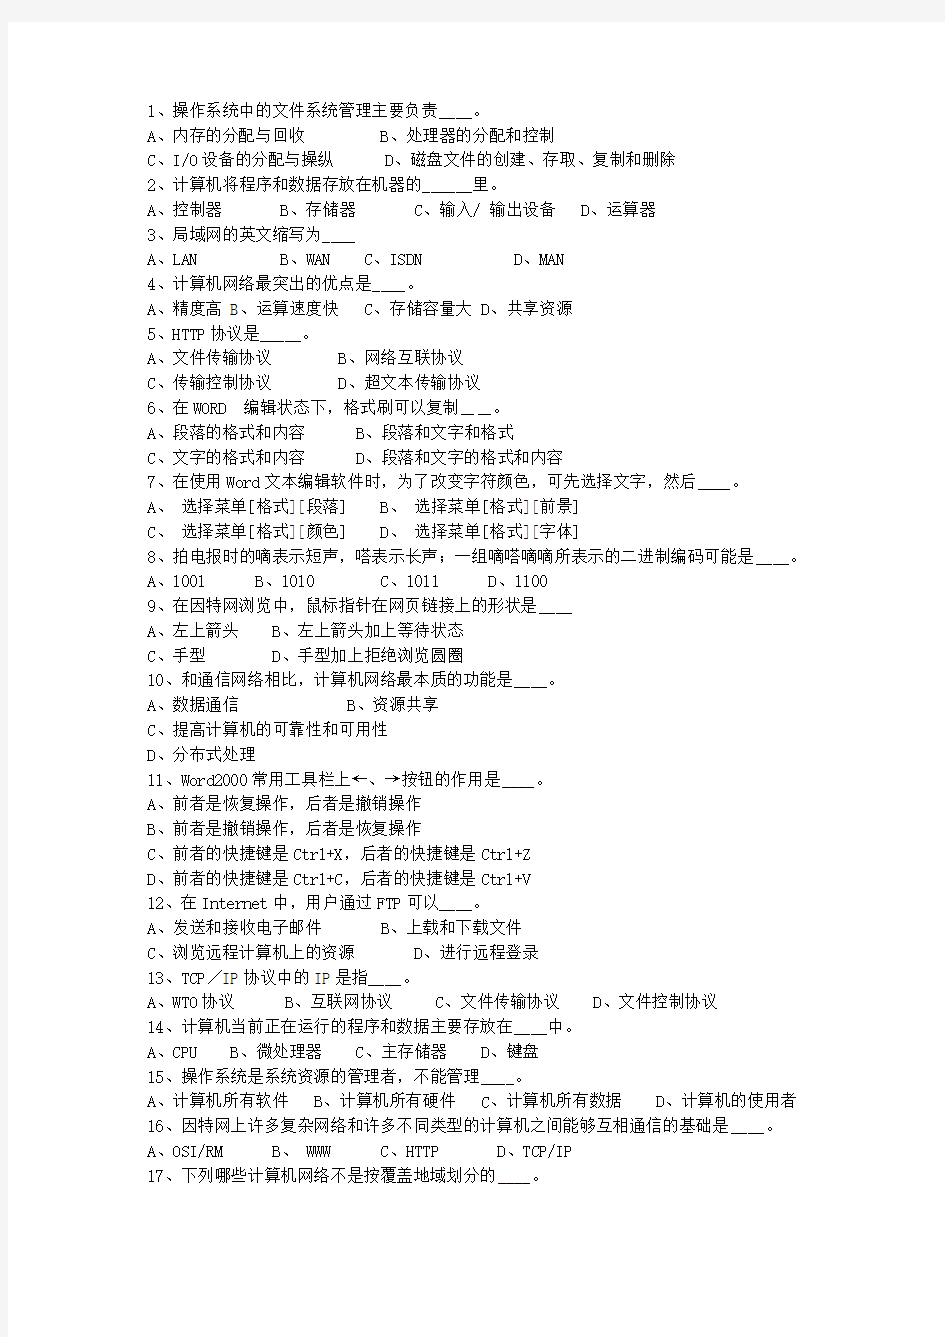 2014青海省事业单位招聘考试试题及答案